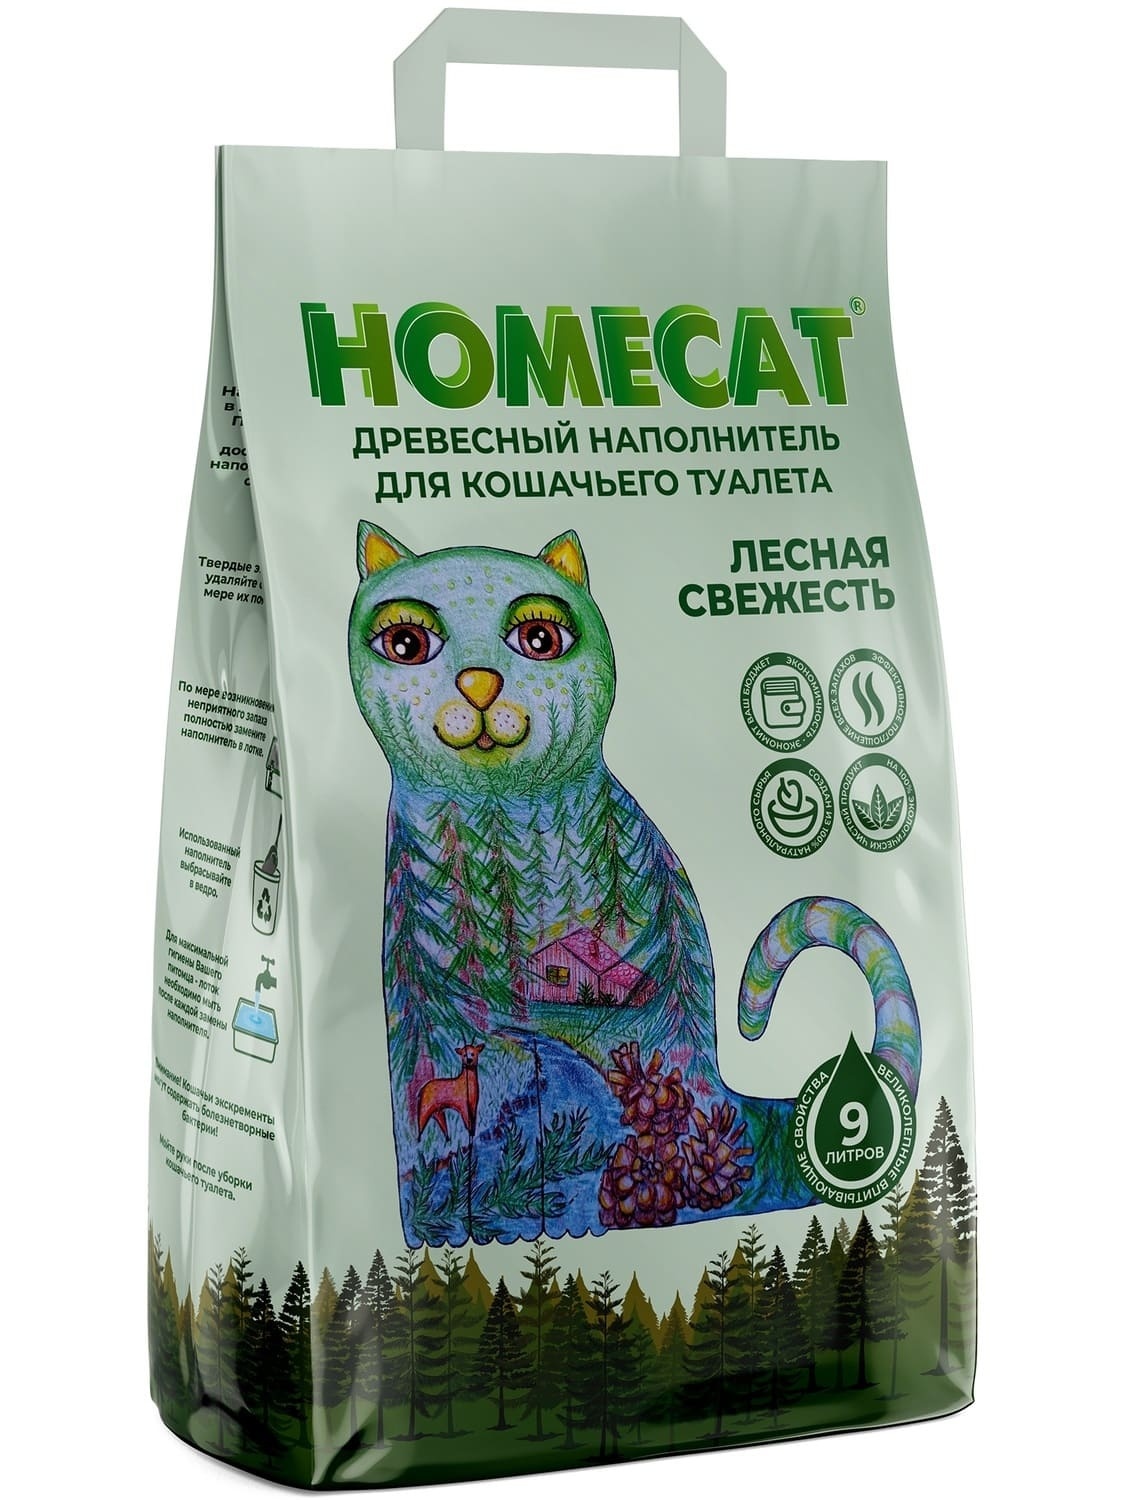 Homecat наполнитель Homecat наполнитель древесный наполнитель, мелкие гранулы (12 кг)